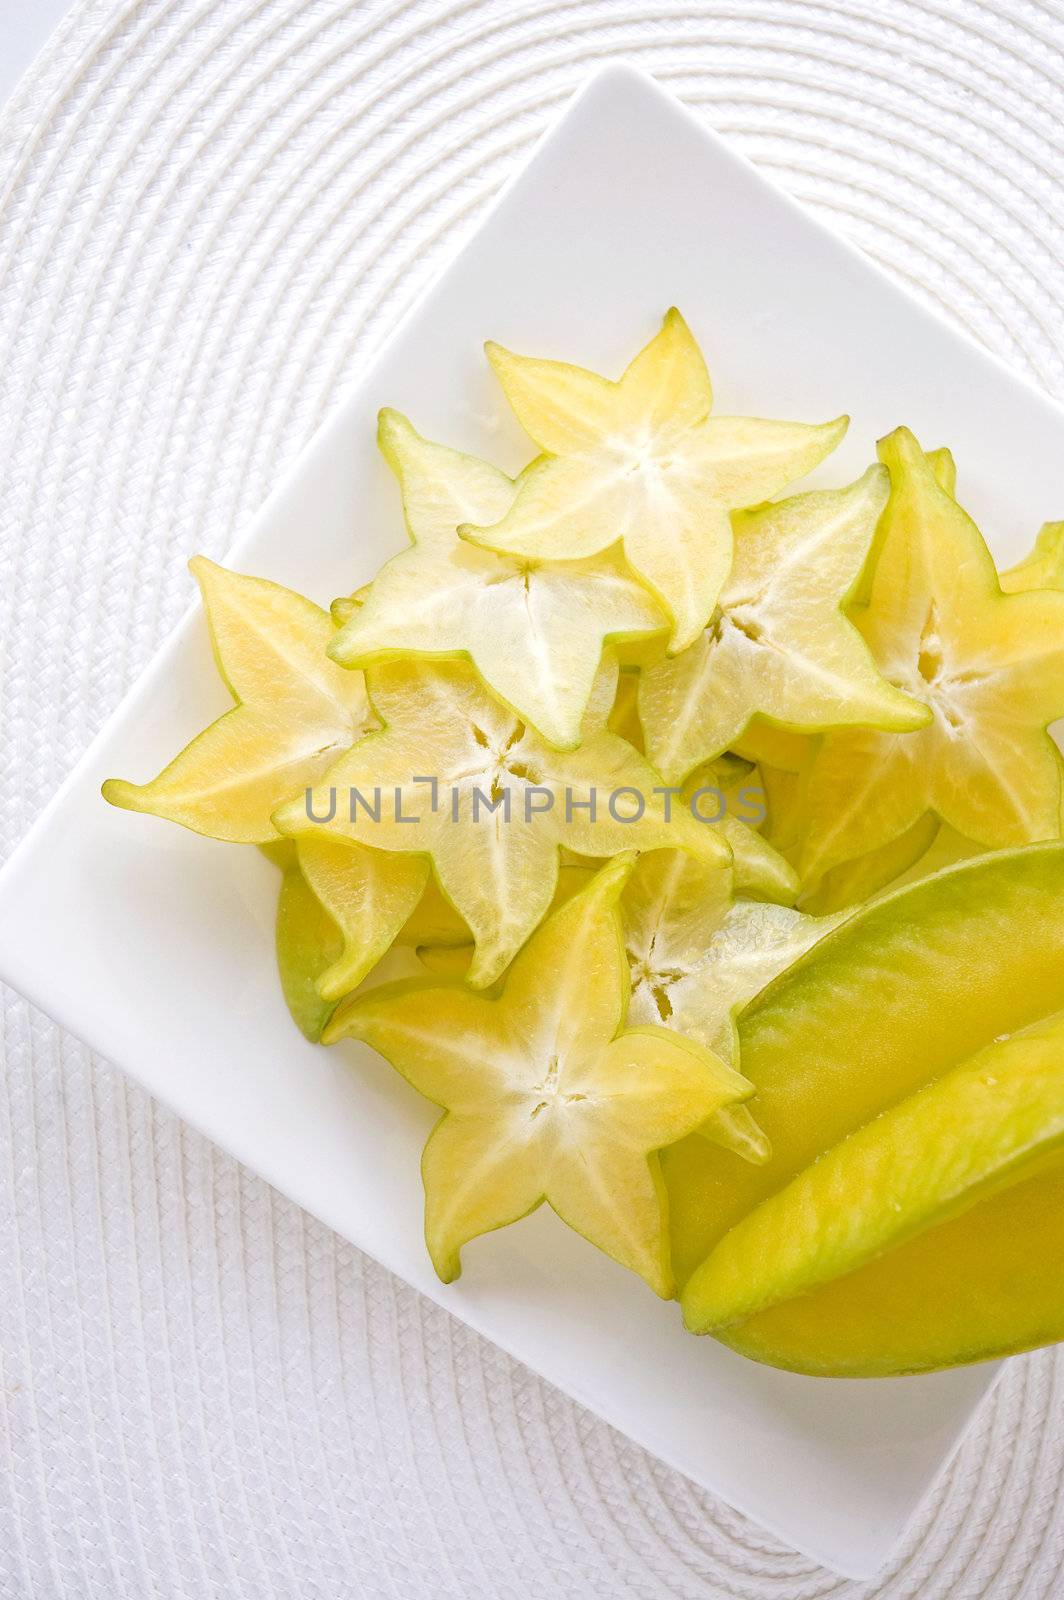 sliced fresh starfruit serve on white plate